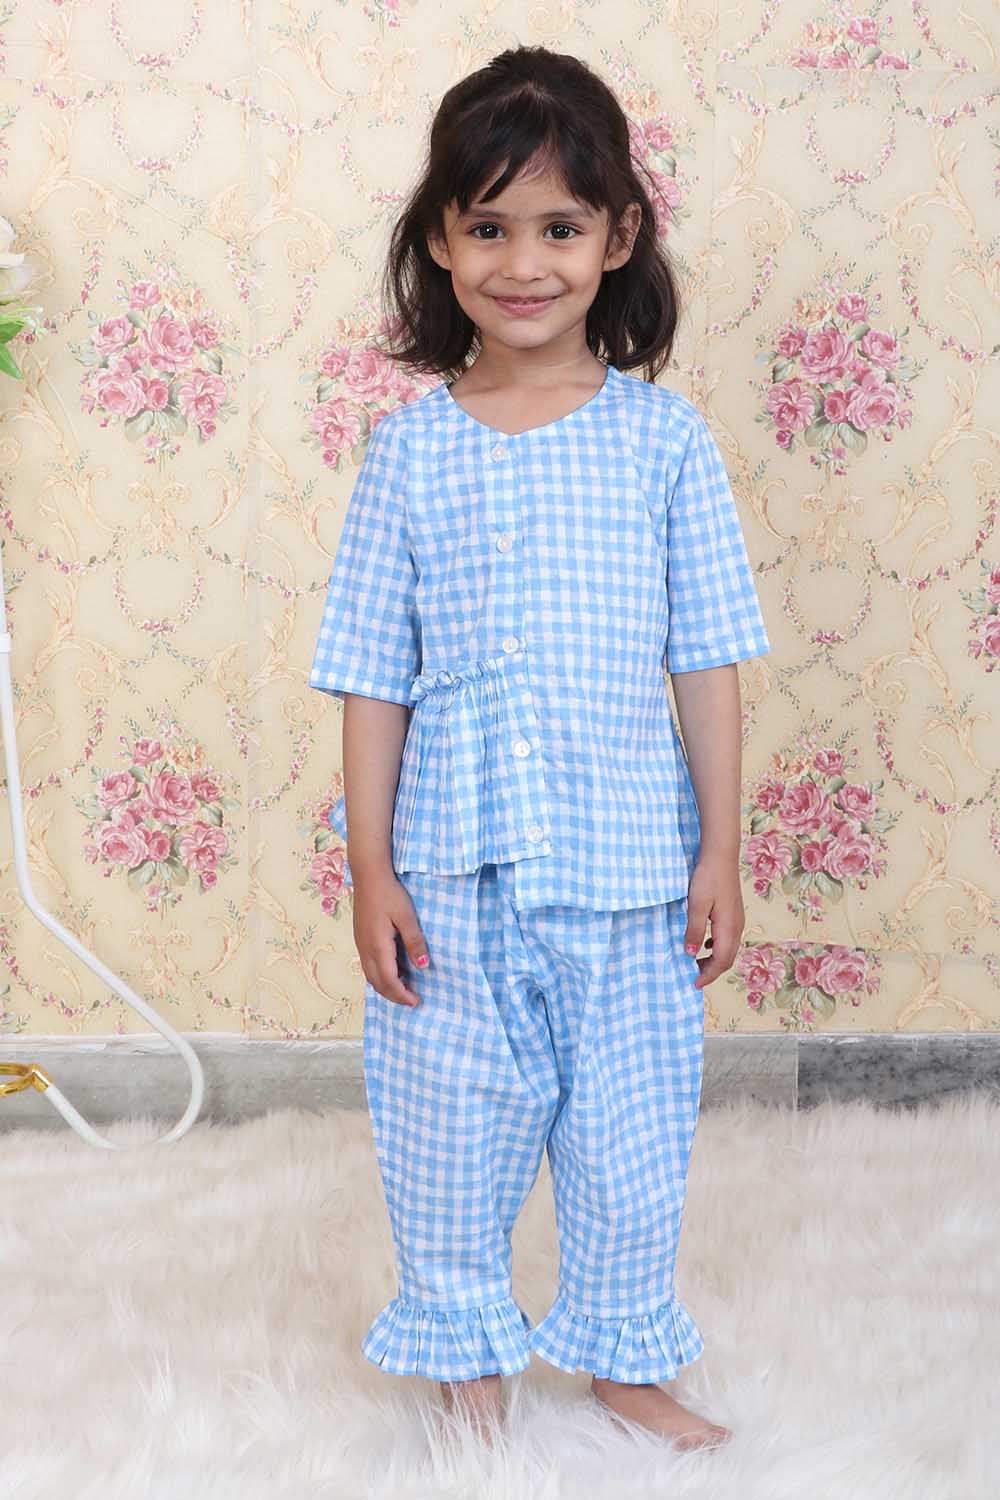 AMILIEe 2-7 Y Kids Baby Girl Silk Nightgown Sleeping Dress Short Sleeve  Satin Home Nightdress Sleepwear - Walmart.com